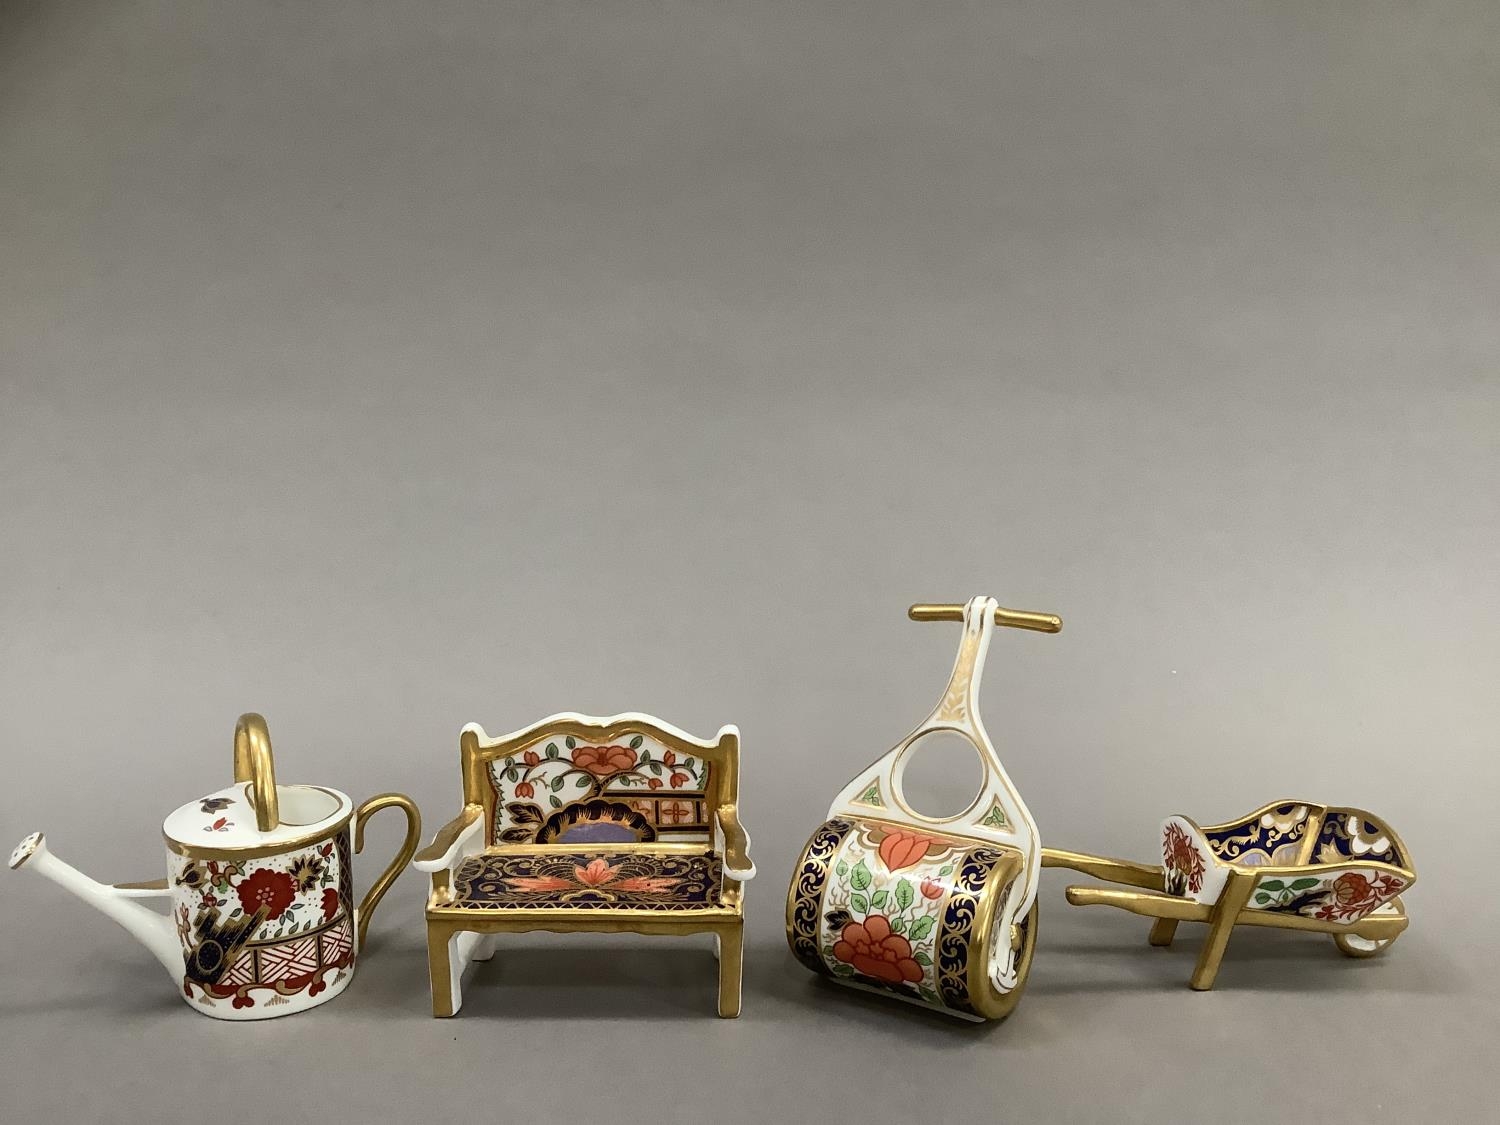 Four Royal Crown Derby miniatures including ag garden bench, watering can, wheelbarrow and garden